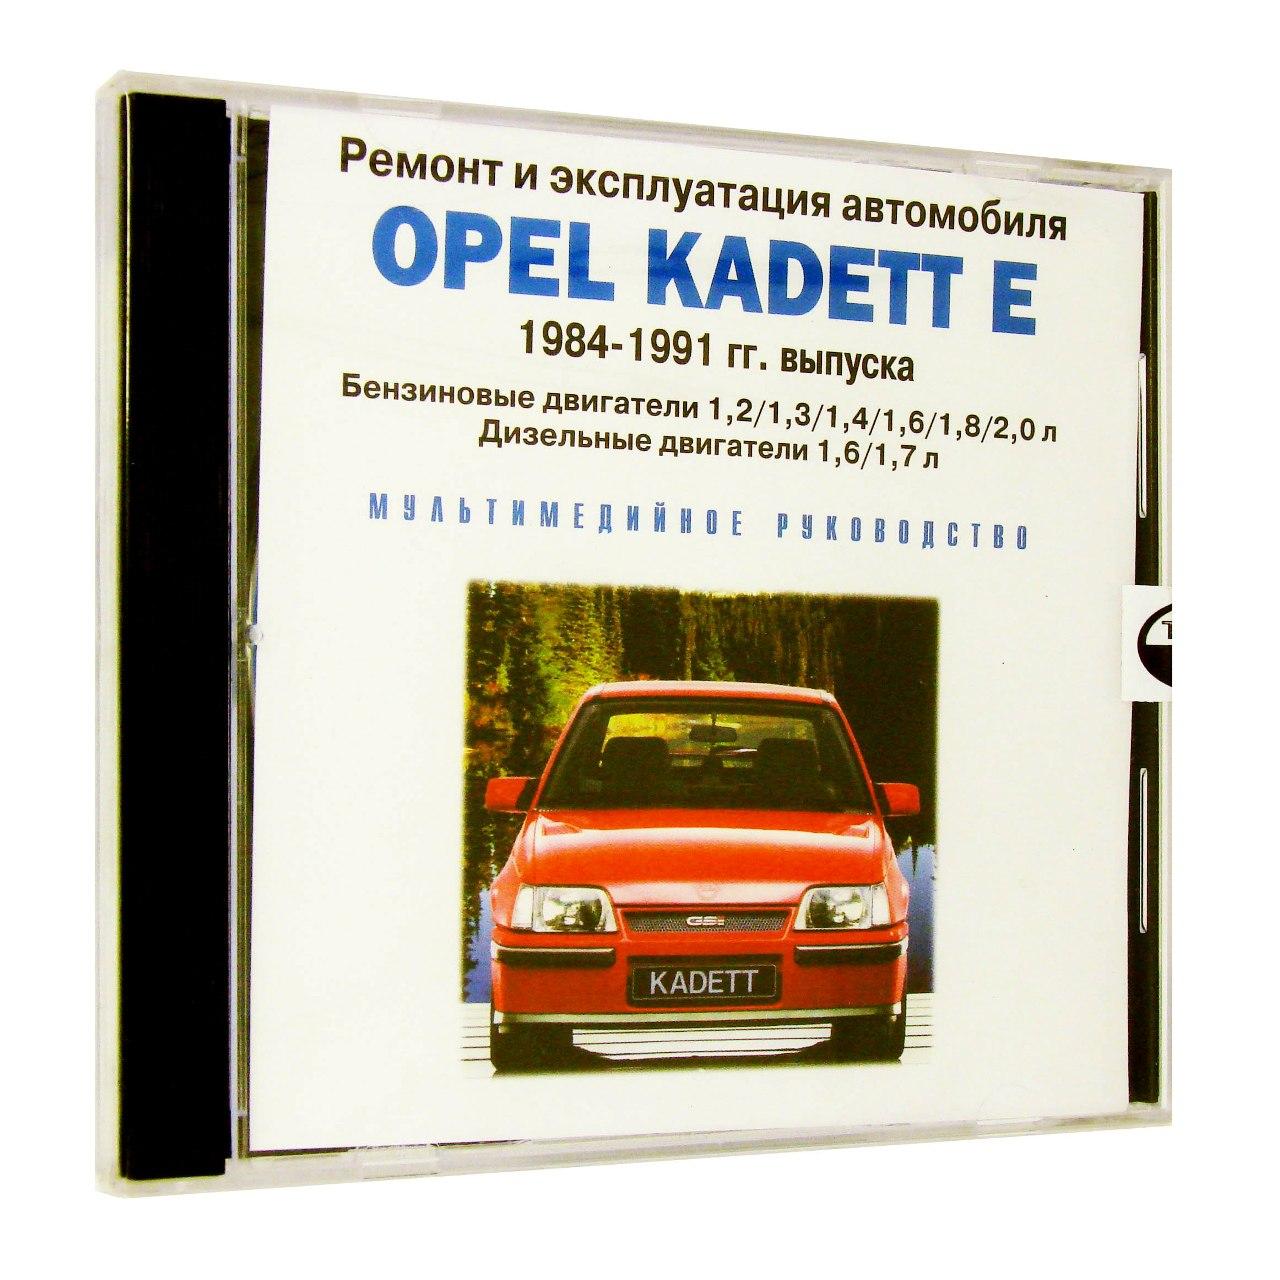 Компьютерный компакт-диск Opel Kadett E 1984-1991г.:ремонт и эксплуатация автомобиля (ПК), фирма "RMG Multimedia", 1CD